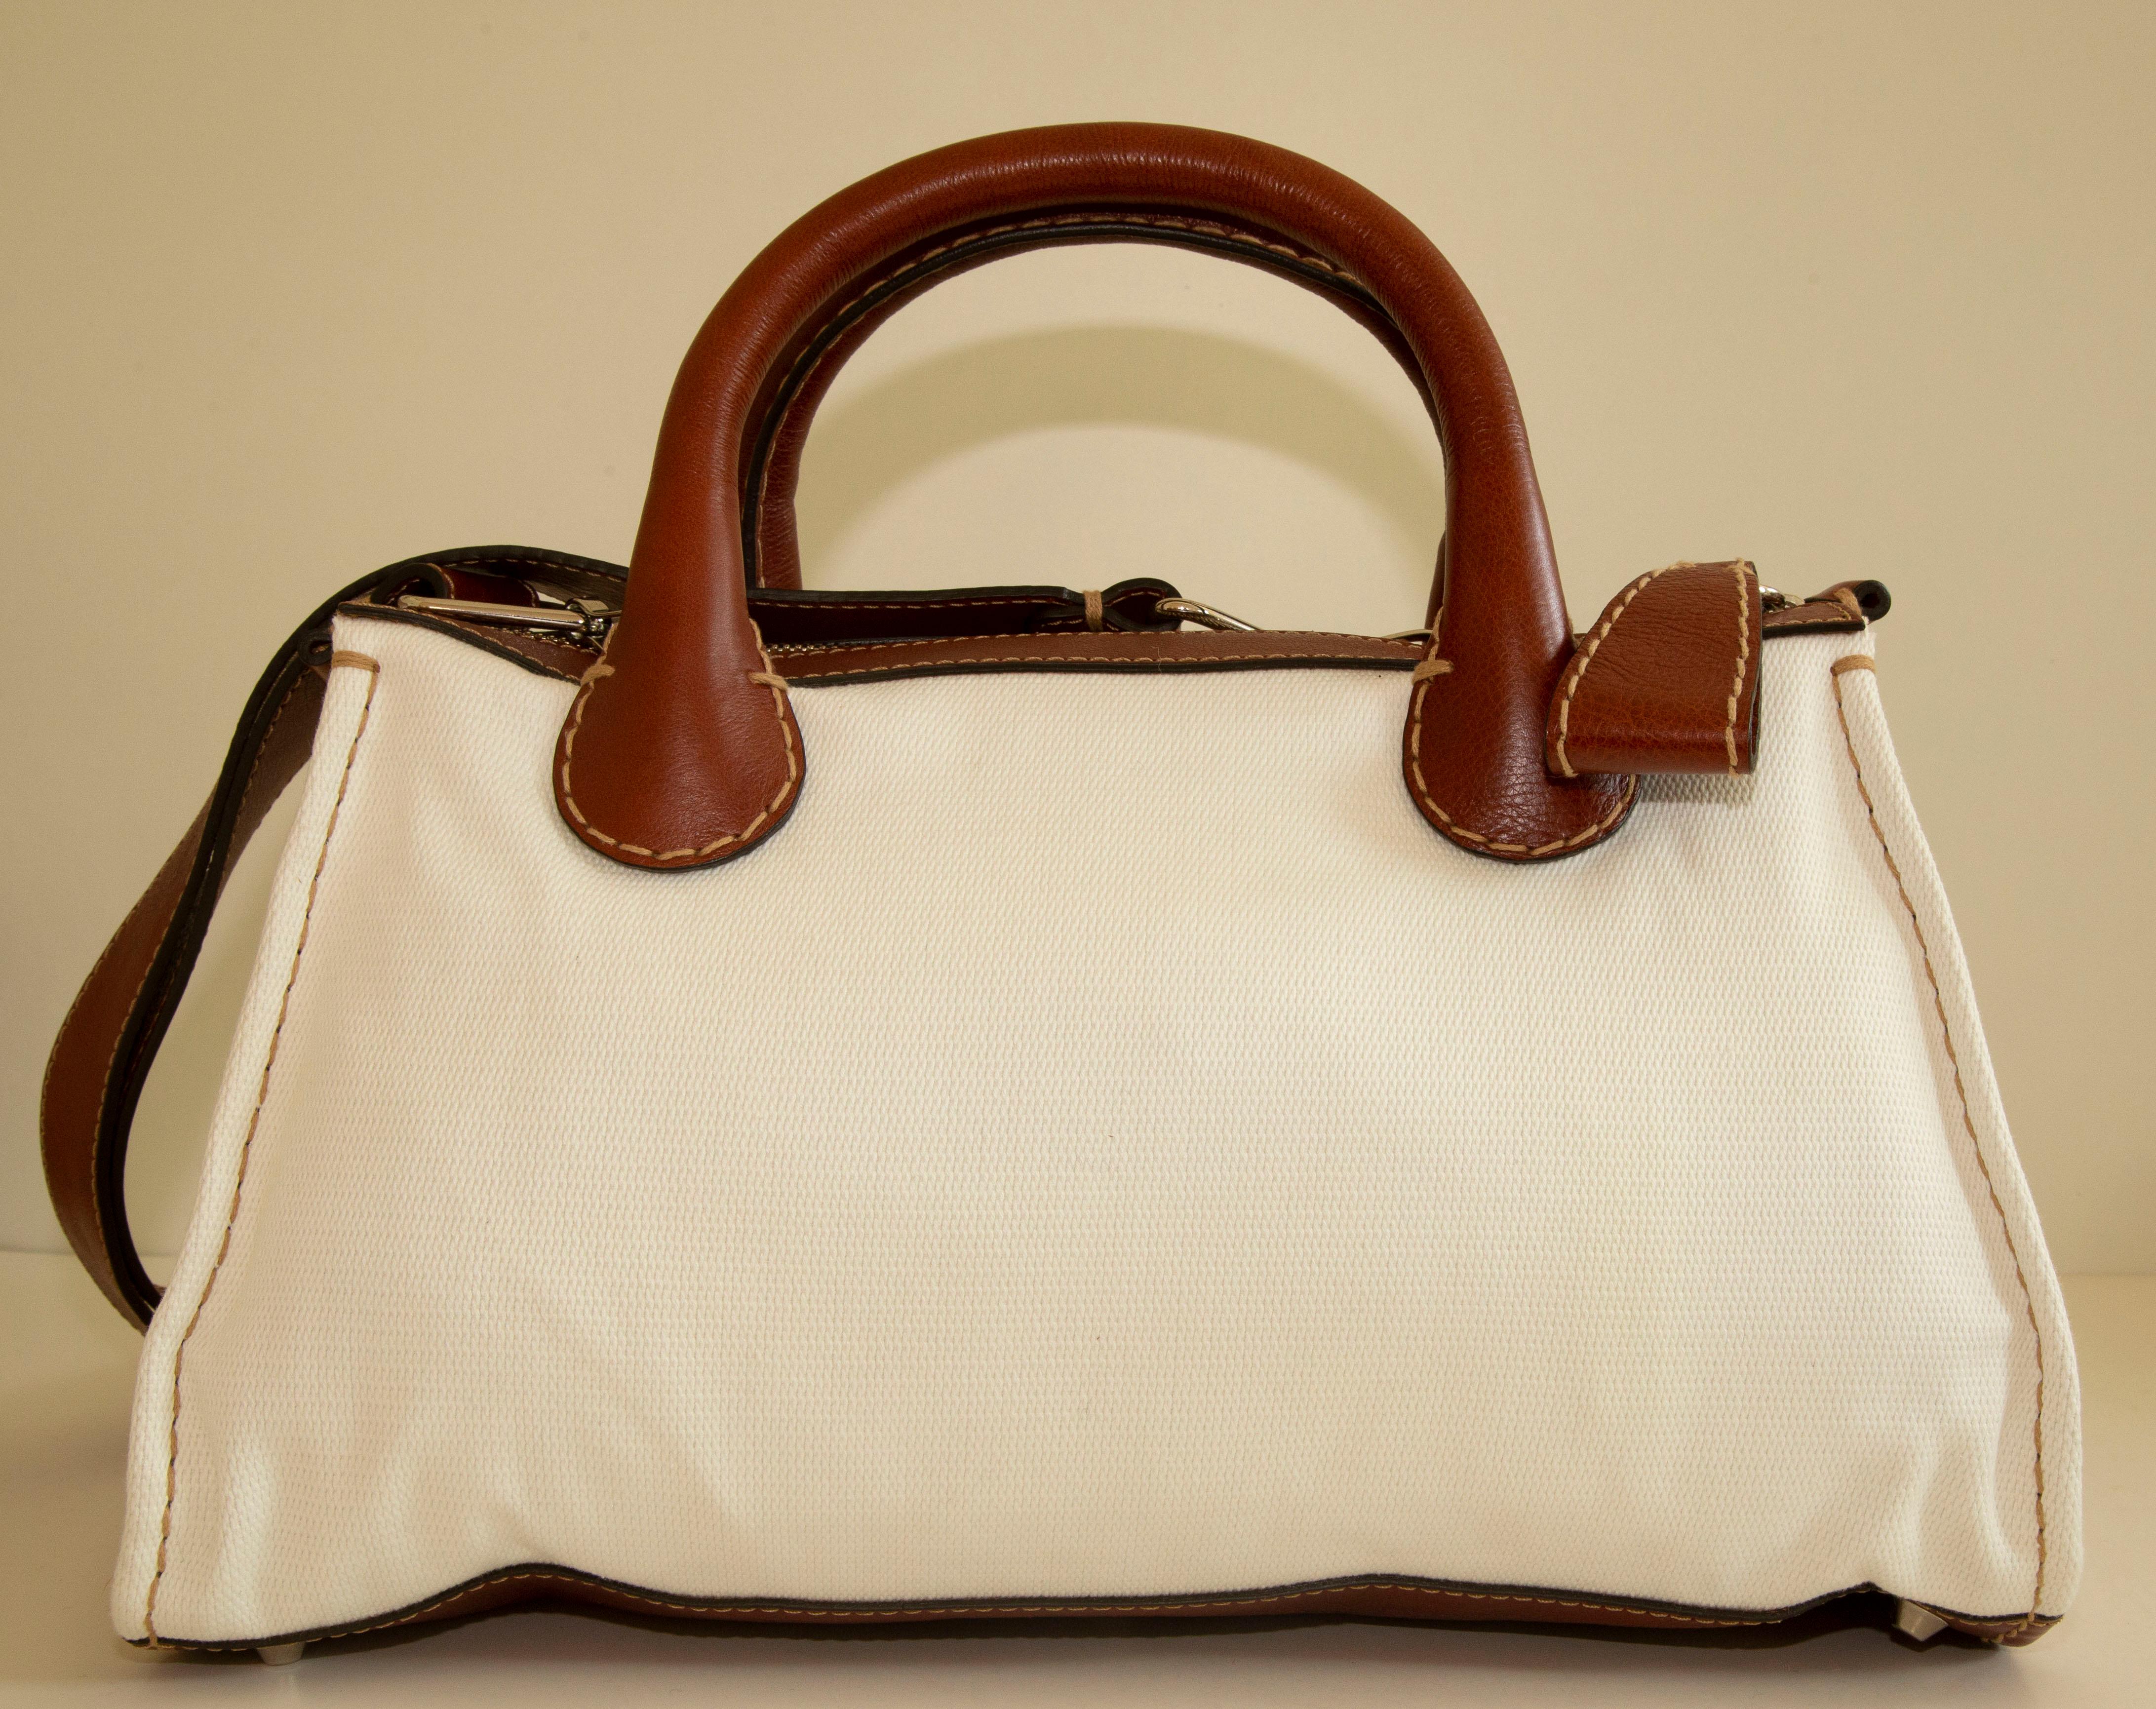 Fourre-tout moyen Chloe Edith en toile blanche avec garniture en cuir marron et quincaillerie en ton argenté. Le sac peut être porté comme un sac à poignée supérieure ou comme un sac à bandoulière grâce à la bandoulière amovible (108 cm de long).